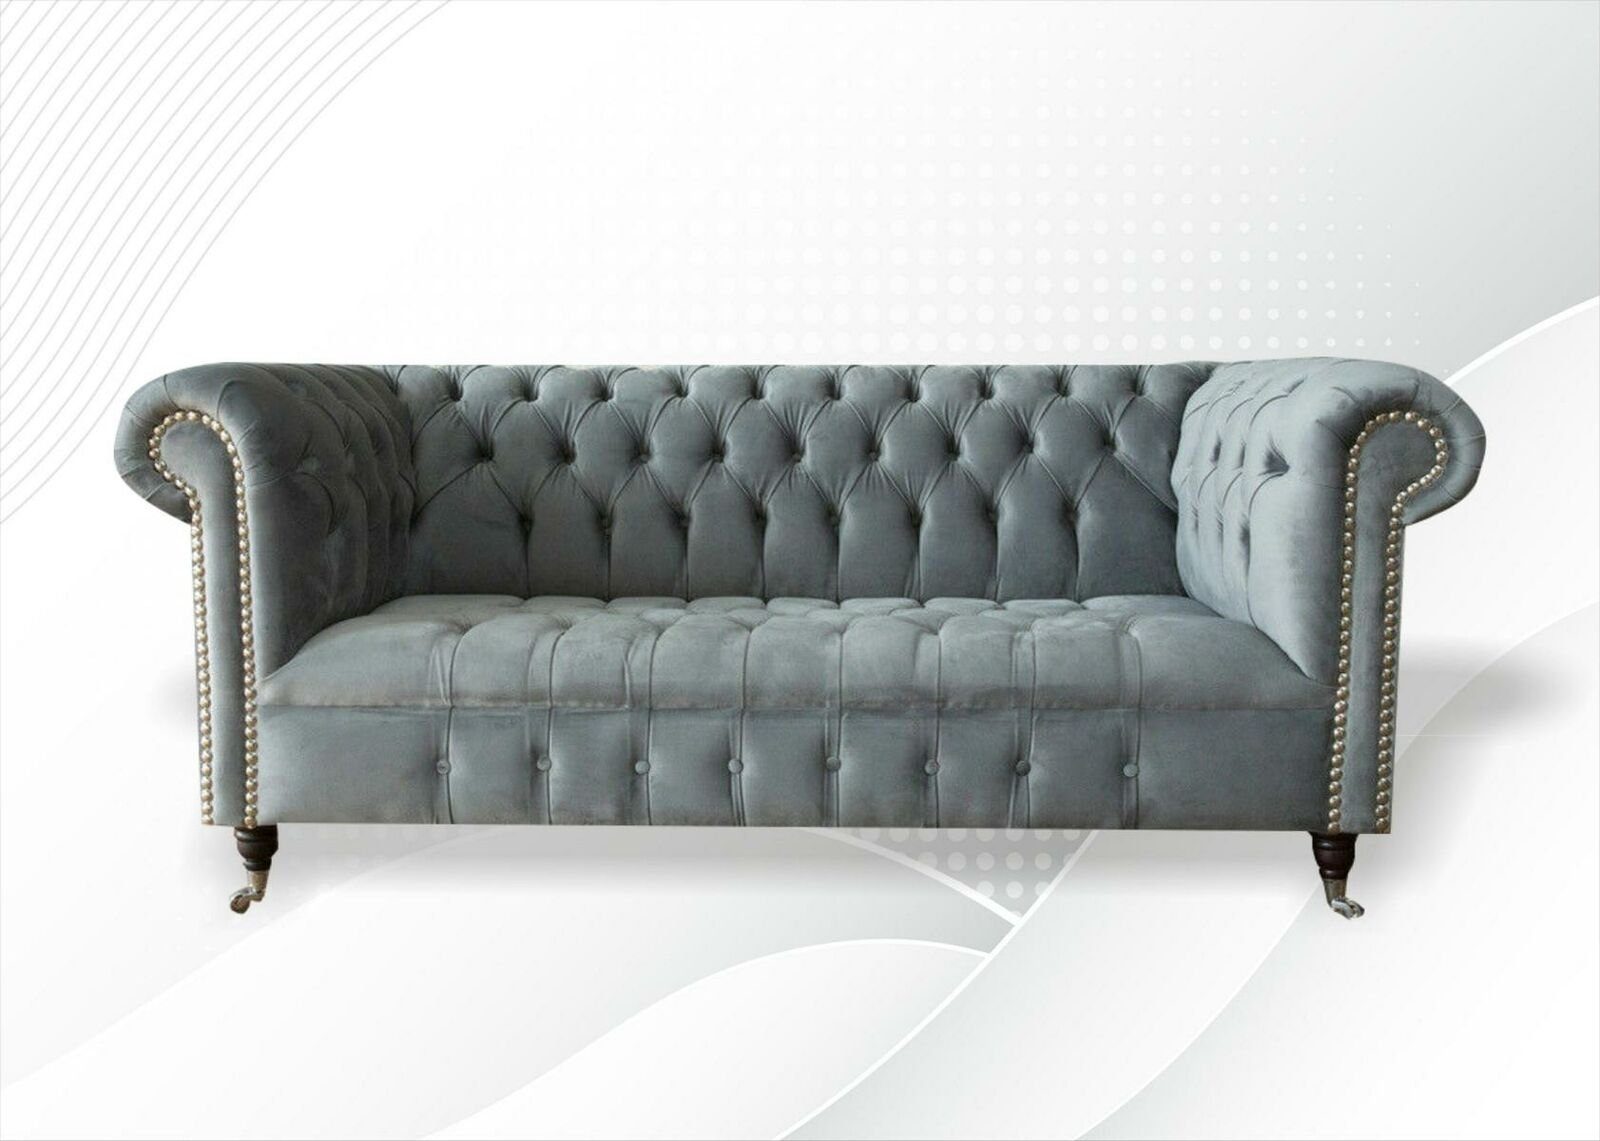 JVmoebel Chesterfield-Sofa, Chesterfield Kreative Möbel Neu Modern Design Textil Wohnzimmer Couchen Graue